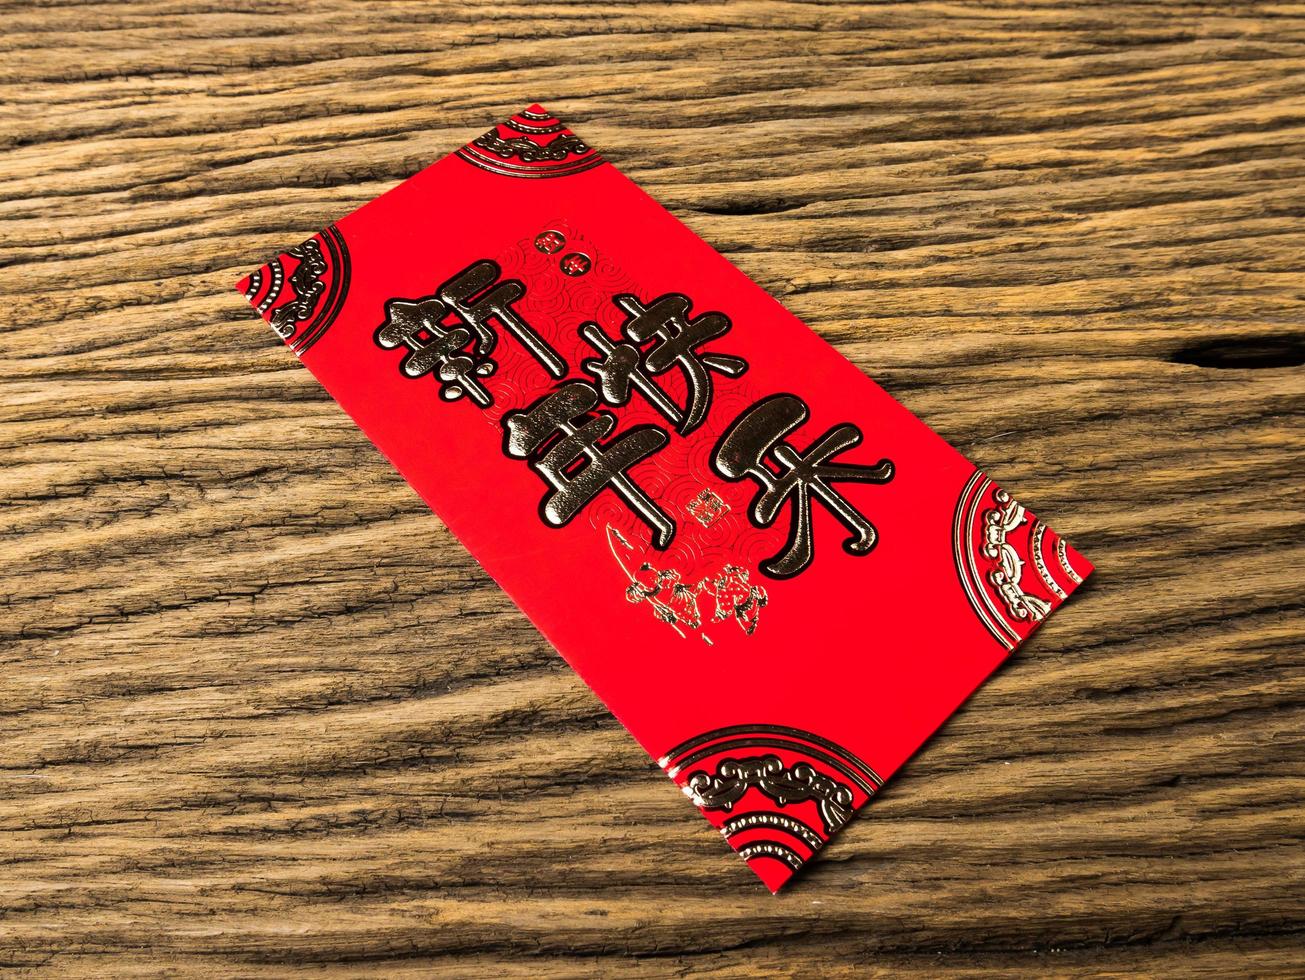 enveloppe rouge sur fond en bois avec février pour cadeau nouvel an chinois. texte chinois sur enveloppe signifiant joyeux nouvel an chinois photo